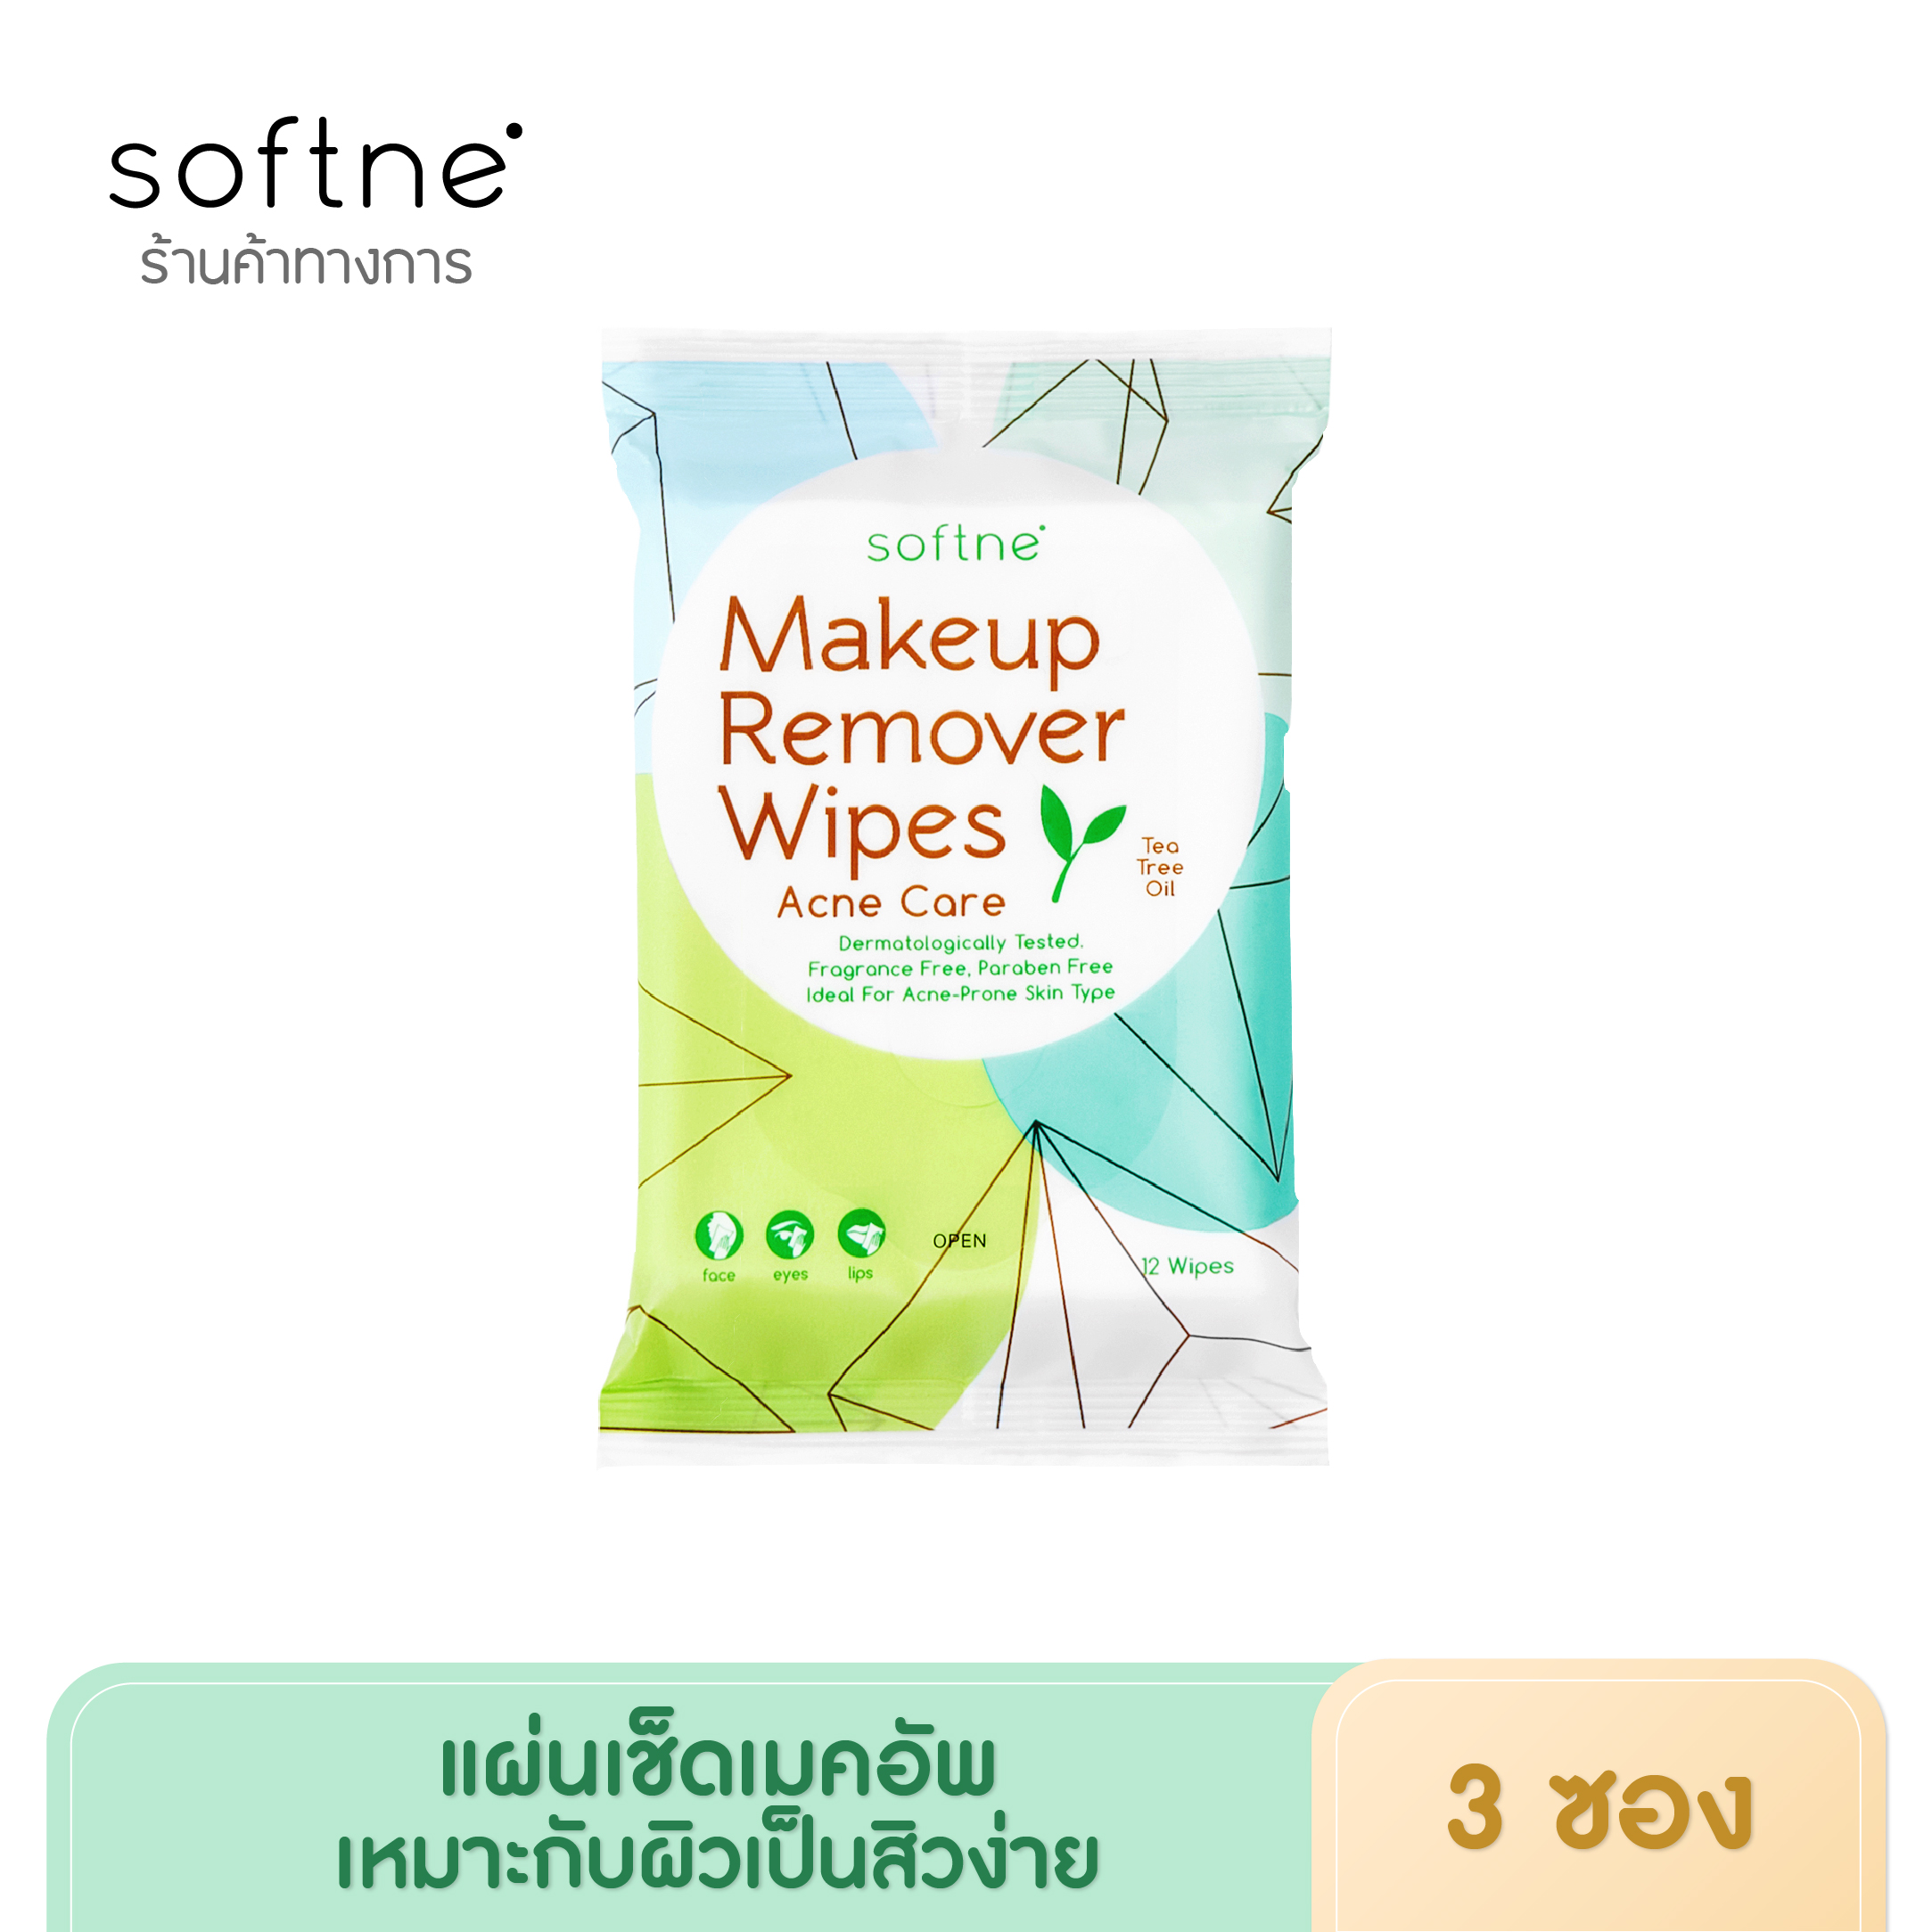 (3 ซอง)Softne' Makeup Remover Wipes Ance Care ซอฟท์เน่ เมคอัพ รีมูฟเวอร์ ไวพส์ สูตร Acne Care 12 แผ่น